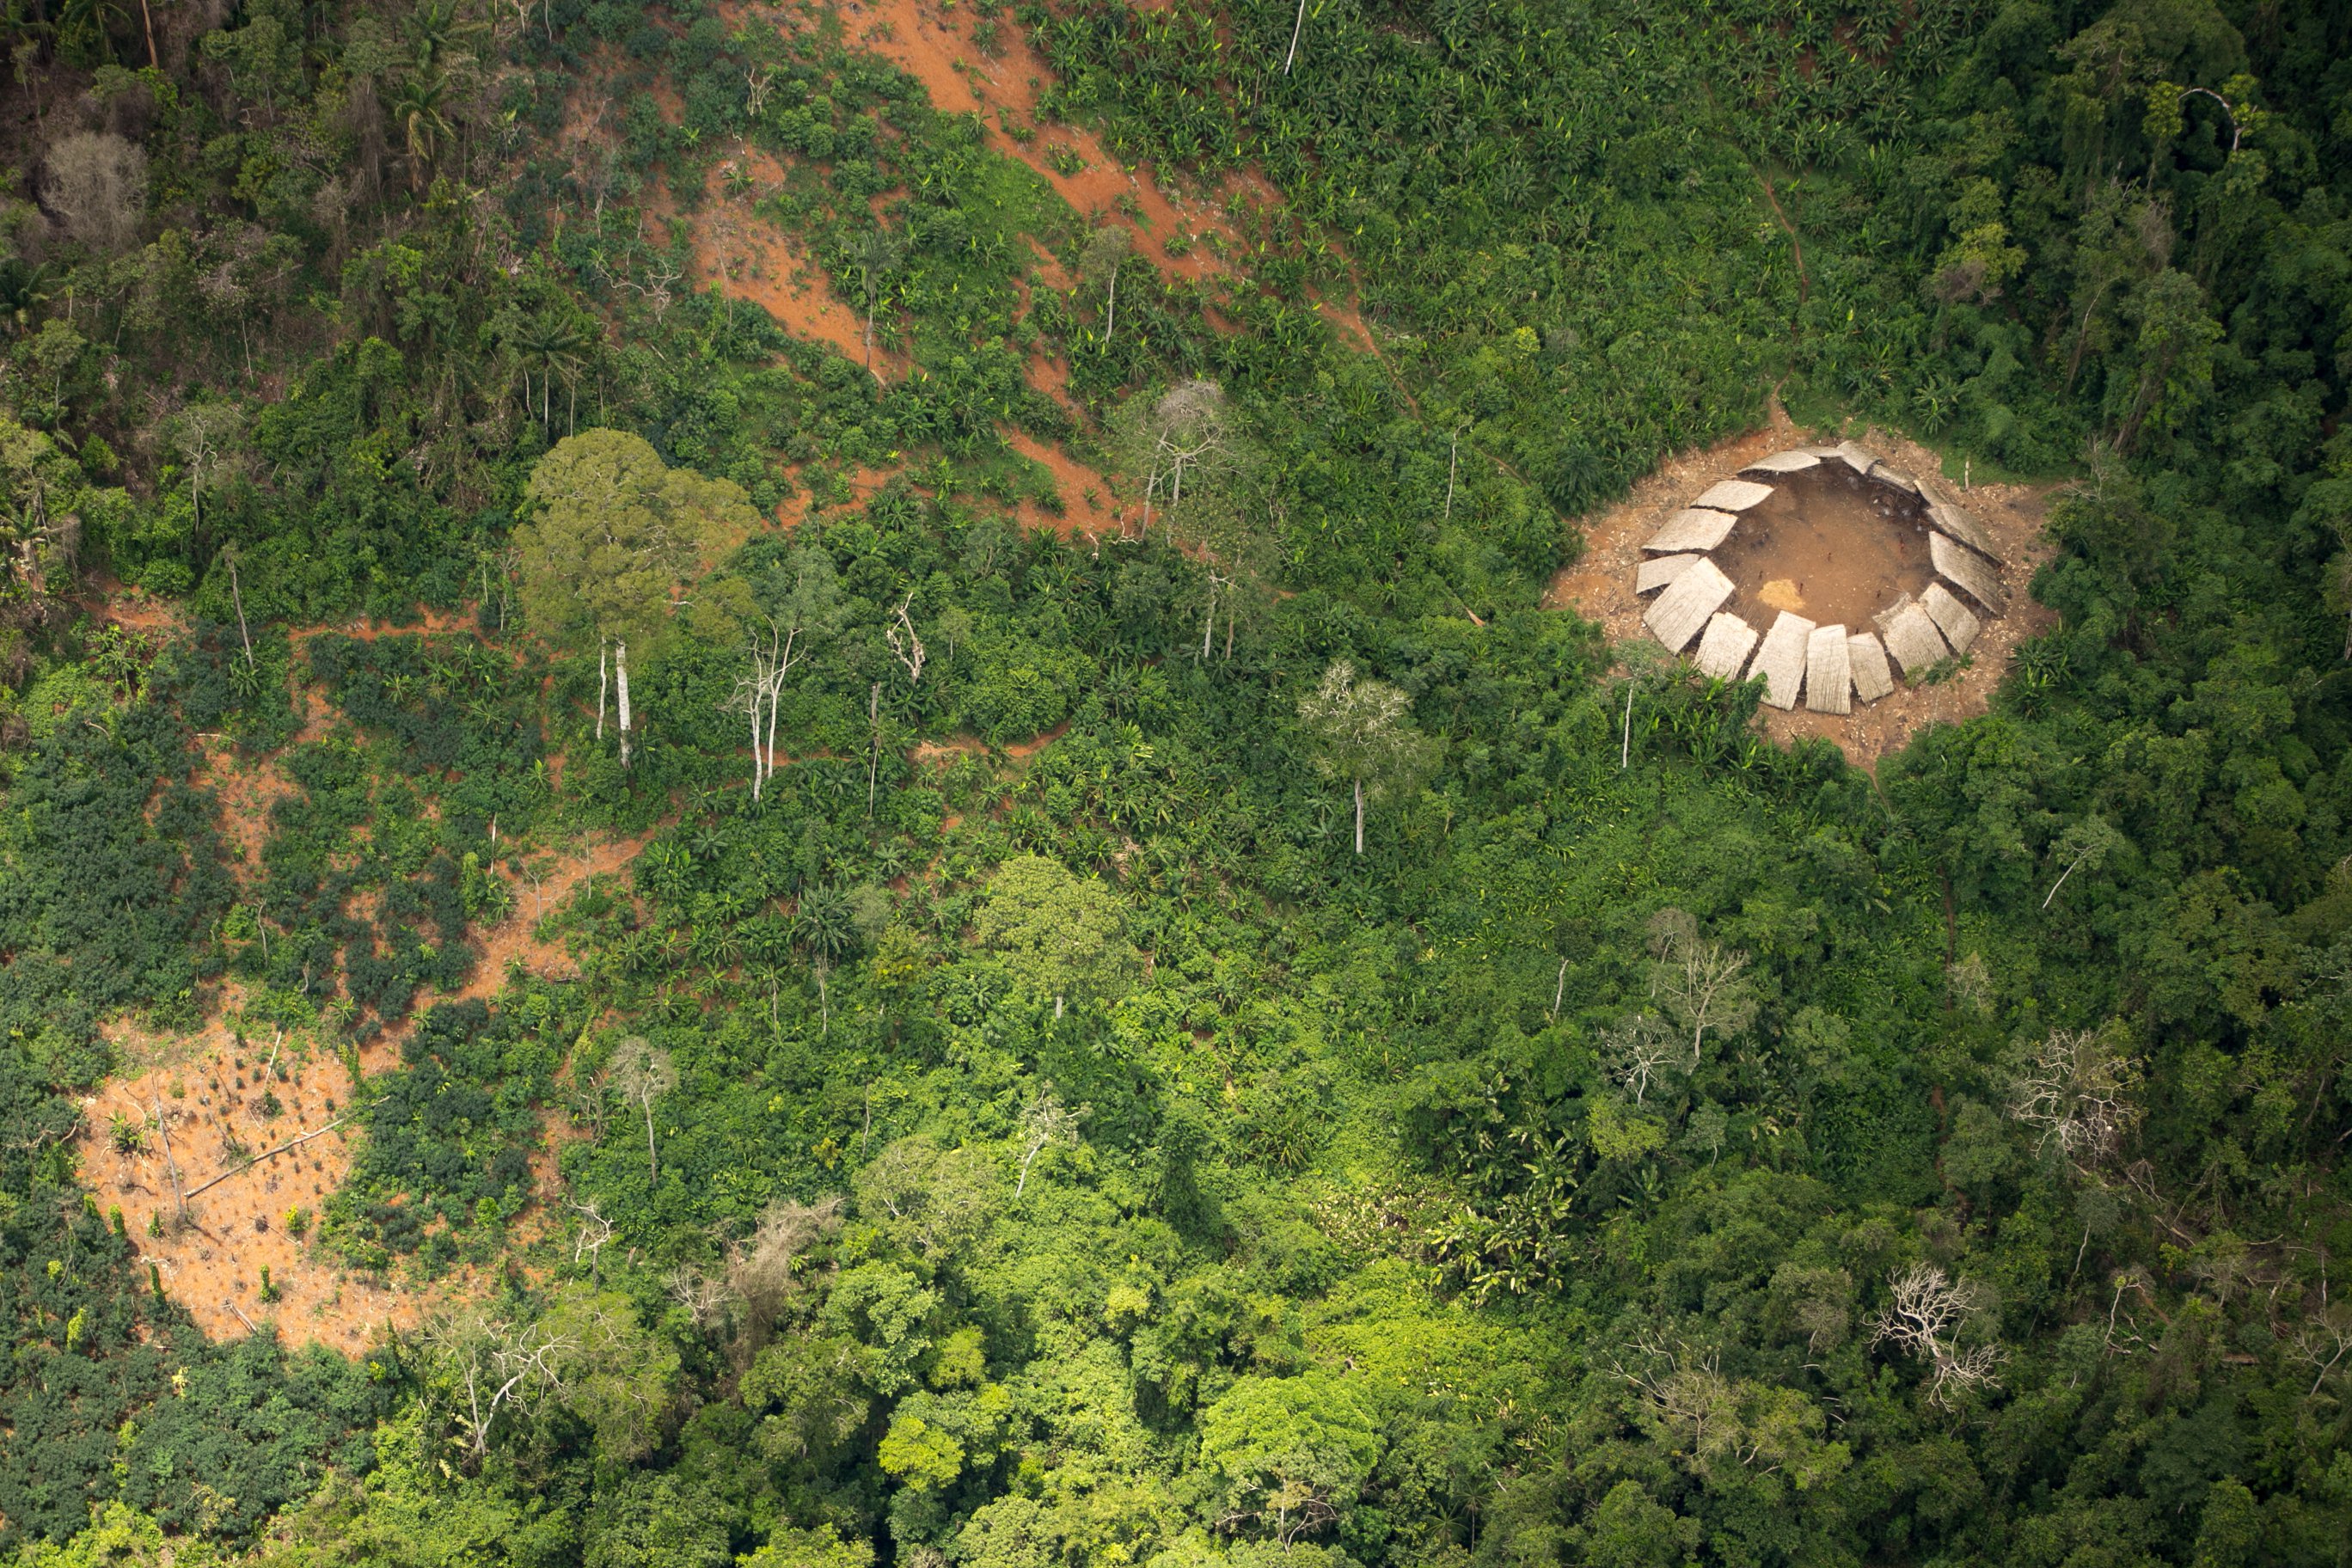 Vue aérienne de la structure circulaire où vivent les Moxihatetema, dans la réserve Yanomami au nord du Brésil. © Guilherme Gnipper Trevisan, Hutukara, Survival